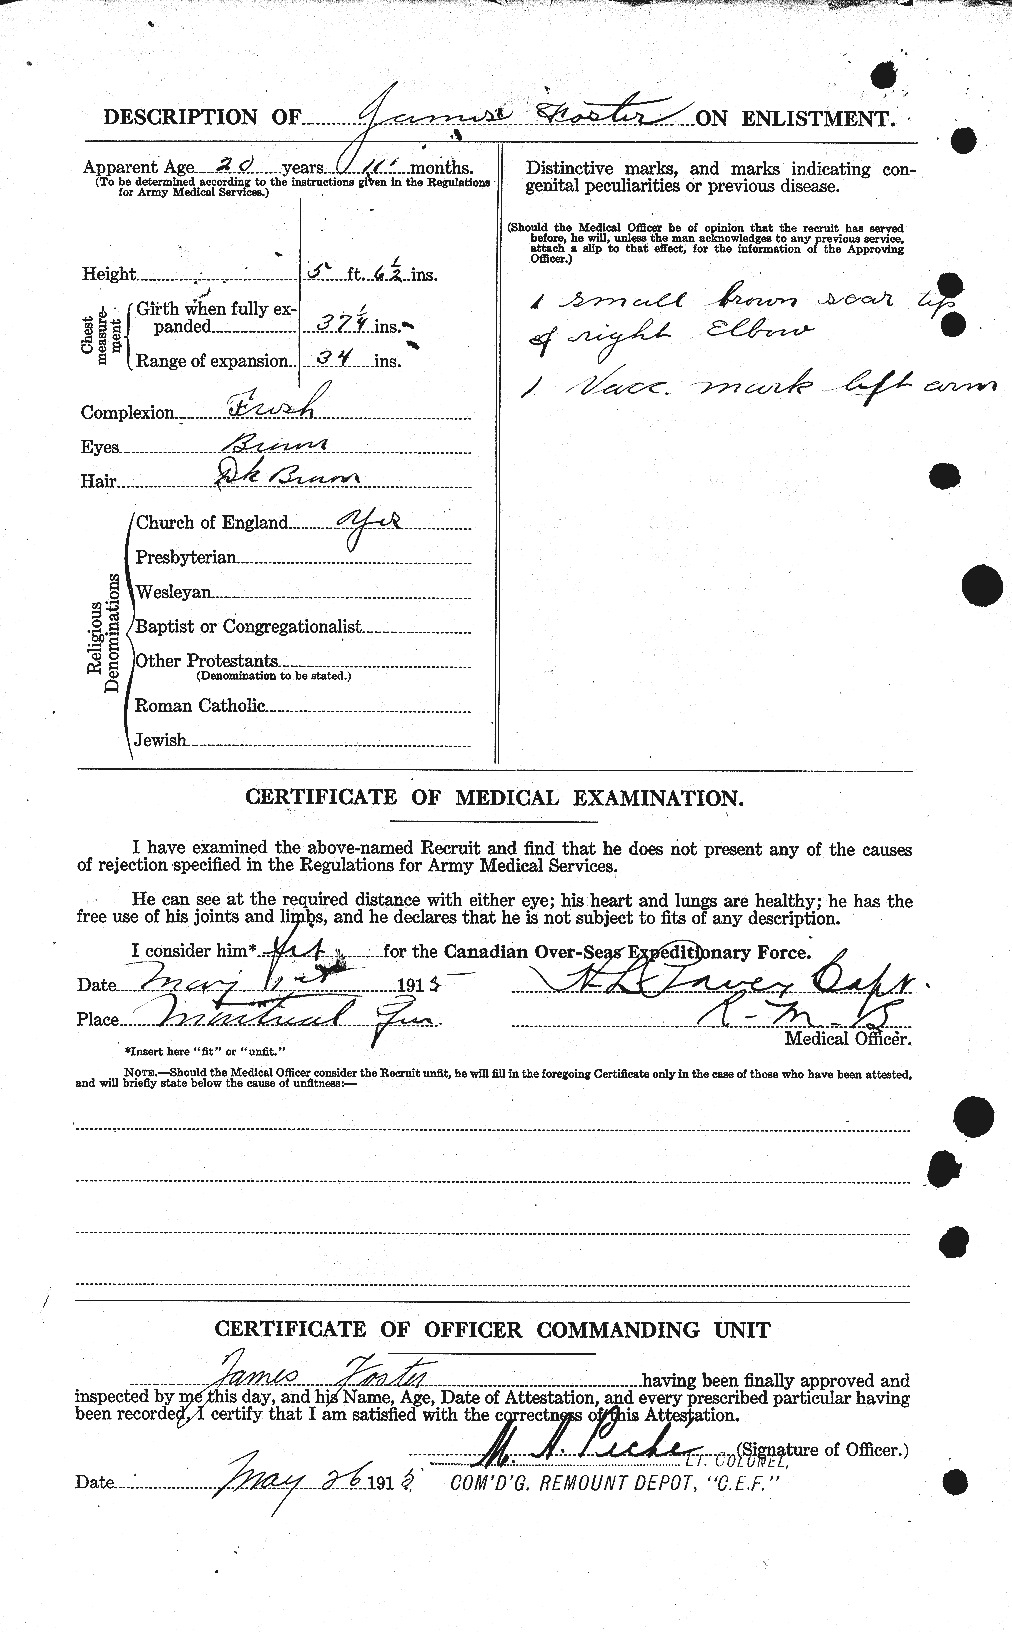 Dossiers du Personnel de la Première Guerre mondiale - CEC 333295b